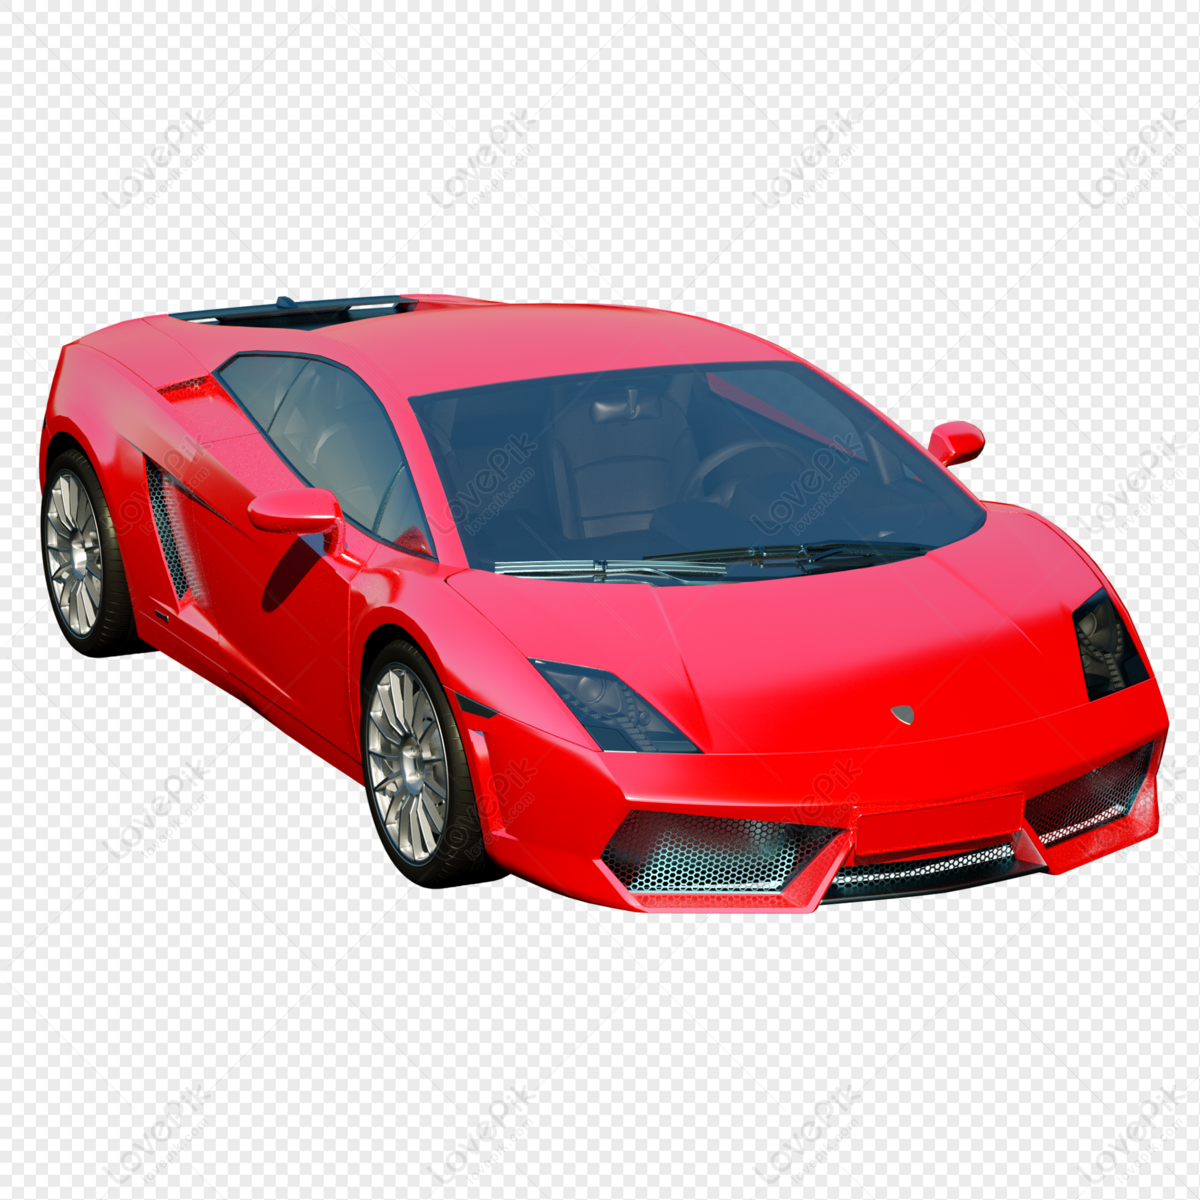 Mô hình xe đỏ 3d: Bạn đang tìm kiếm một mô hình xe đa dạng và độc đáo? Không còn phải tìm kiếm nữa, hãy xem những mẫu mô hình xe đỏ 3d đẹp mắt và sáng tạo này, chắc chắn sẽ làm bạn thích thú.